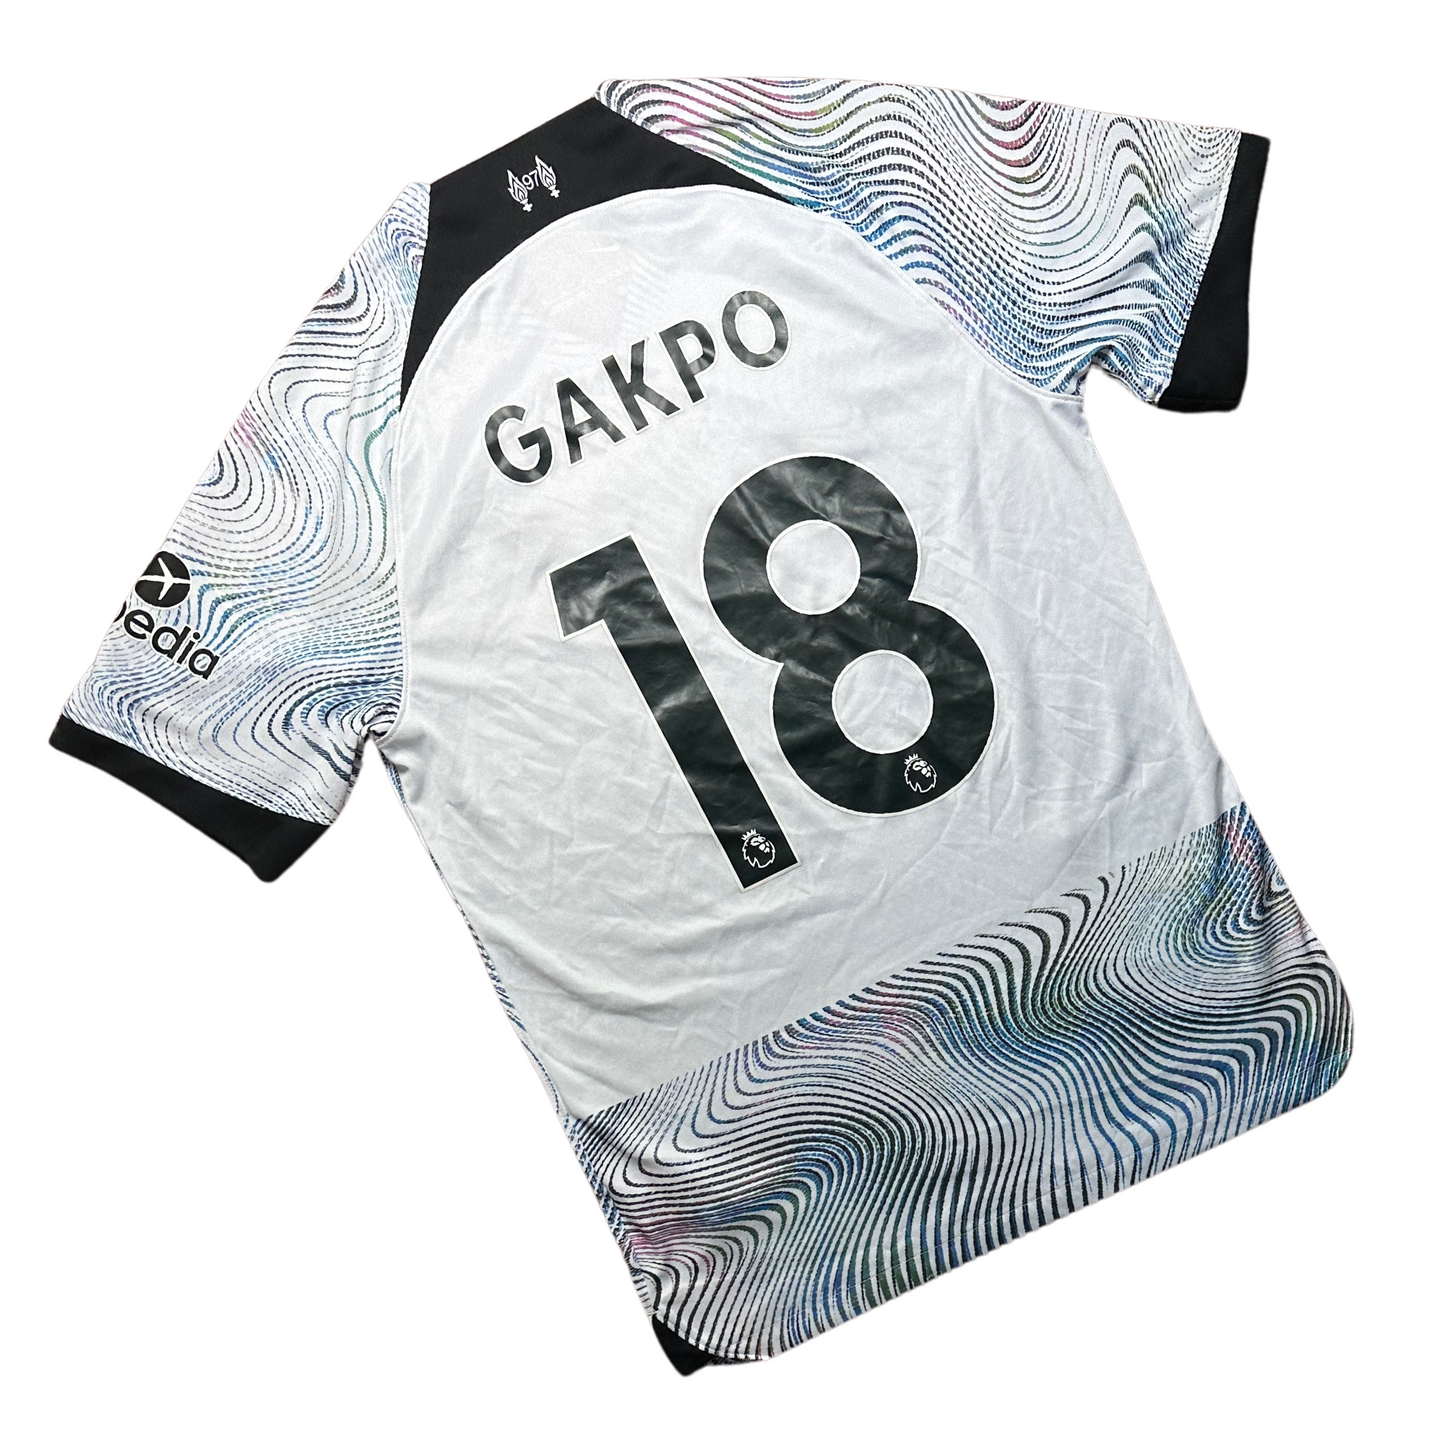 Liverpool 2022/2023 Away Football Shirt Gakpo (18)